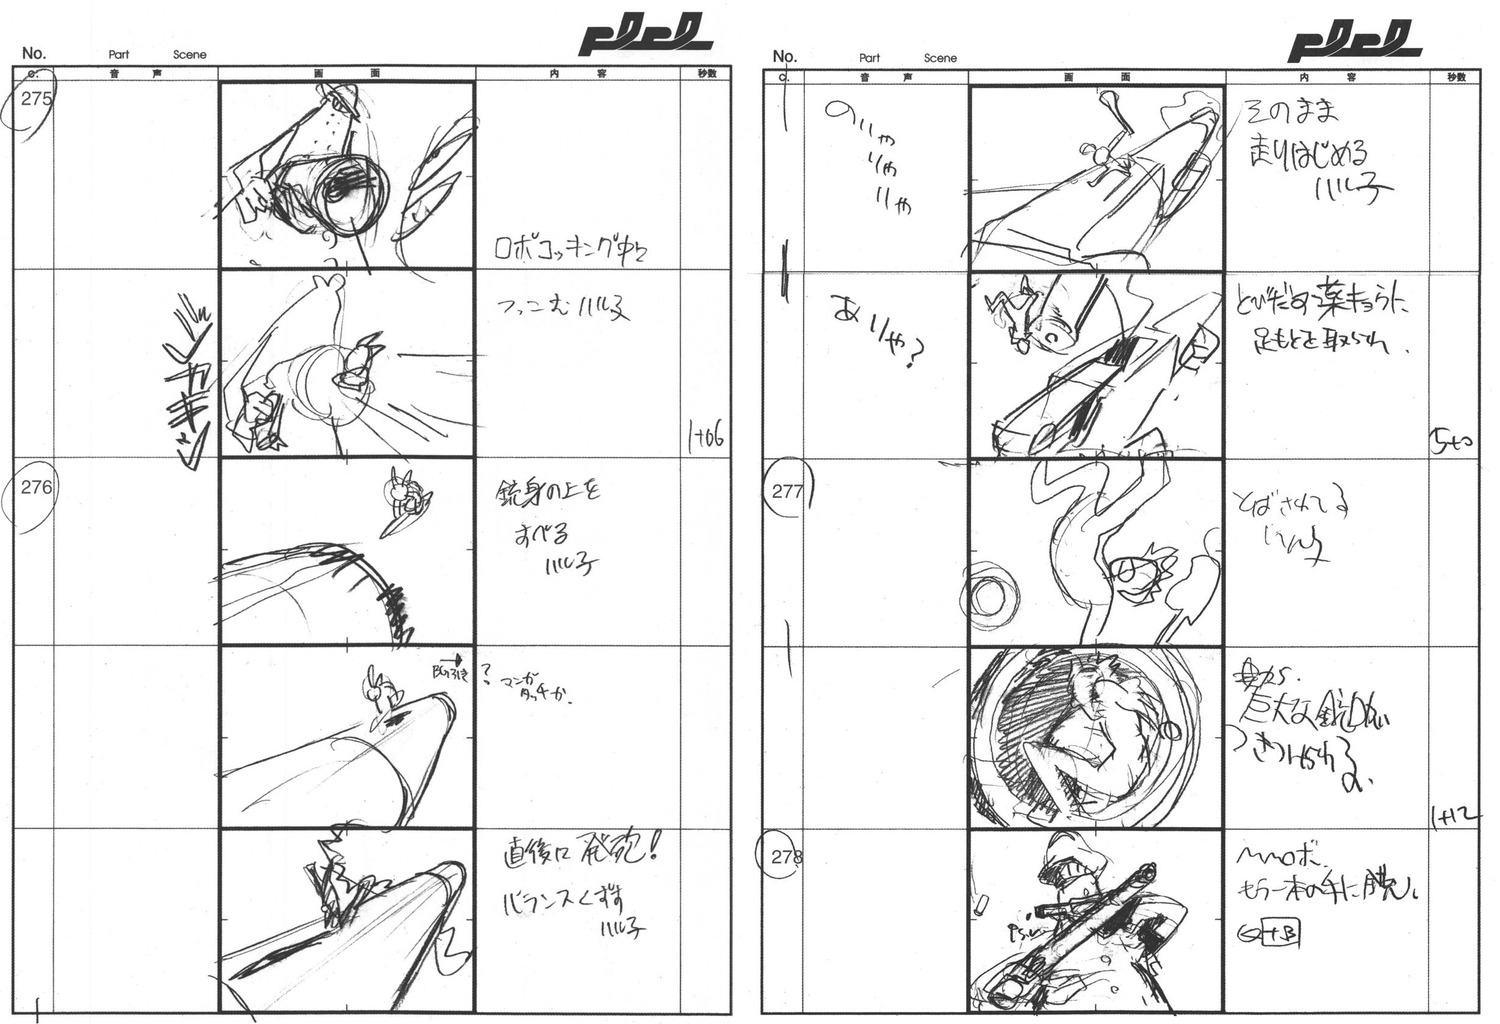 flcl flcl_series hiroyuki_imaishi production_materials storyboard